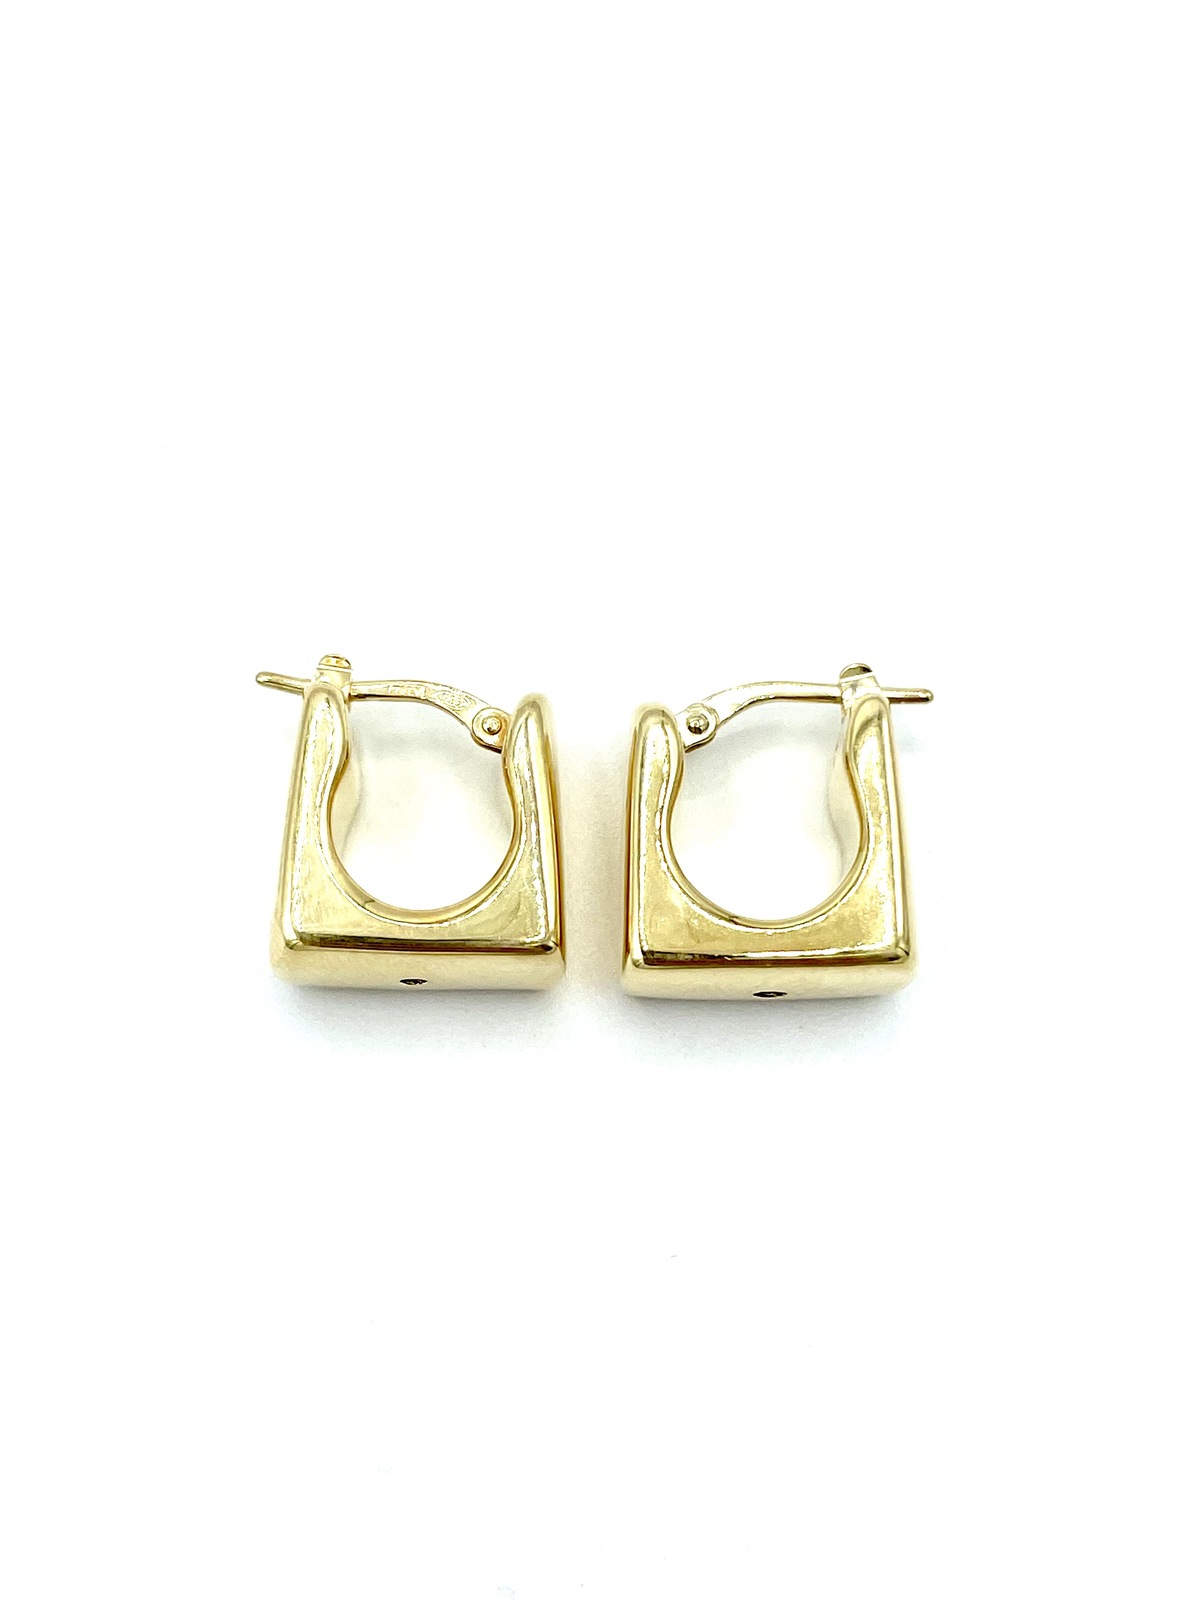 Earrings in silver tit. 925m - O387G